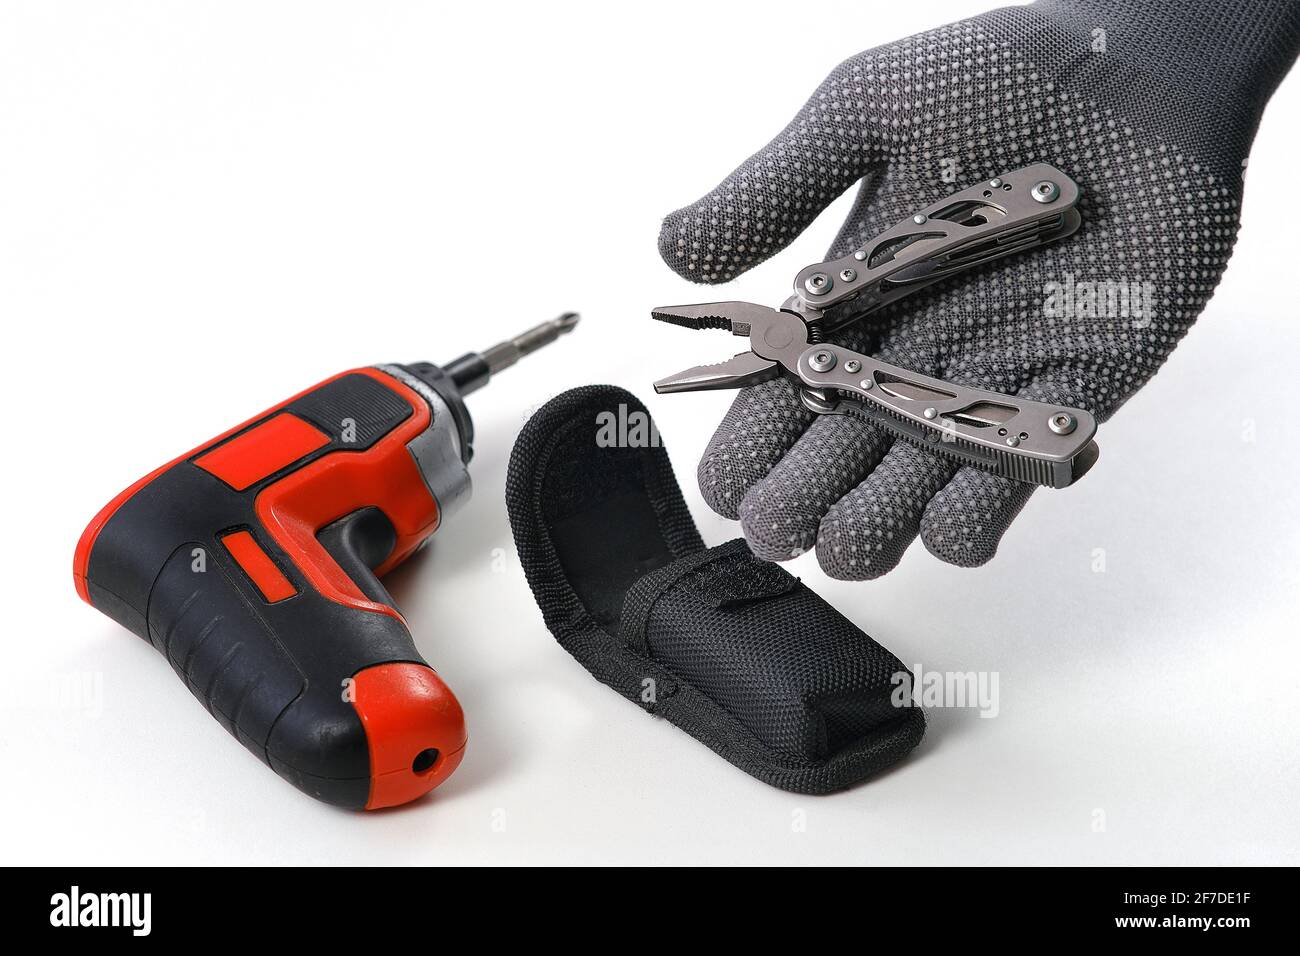 Multi-outils. Un homme démonte les pinces pliantes. En arrière-plan, un tournevis électrique. Un outil pour les petites réparations à domicile Banque D'Images